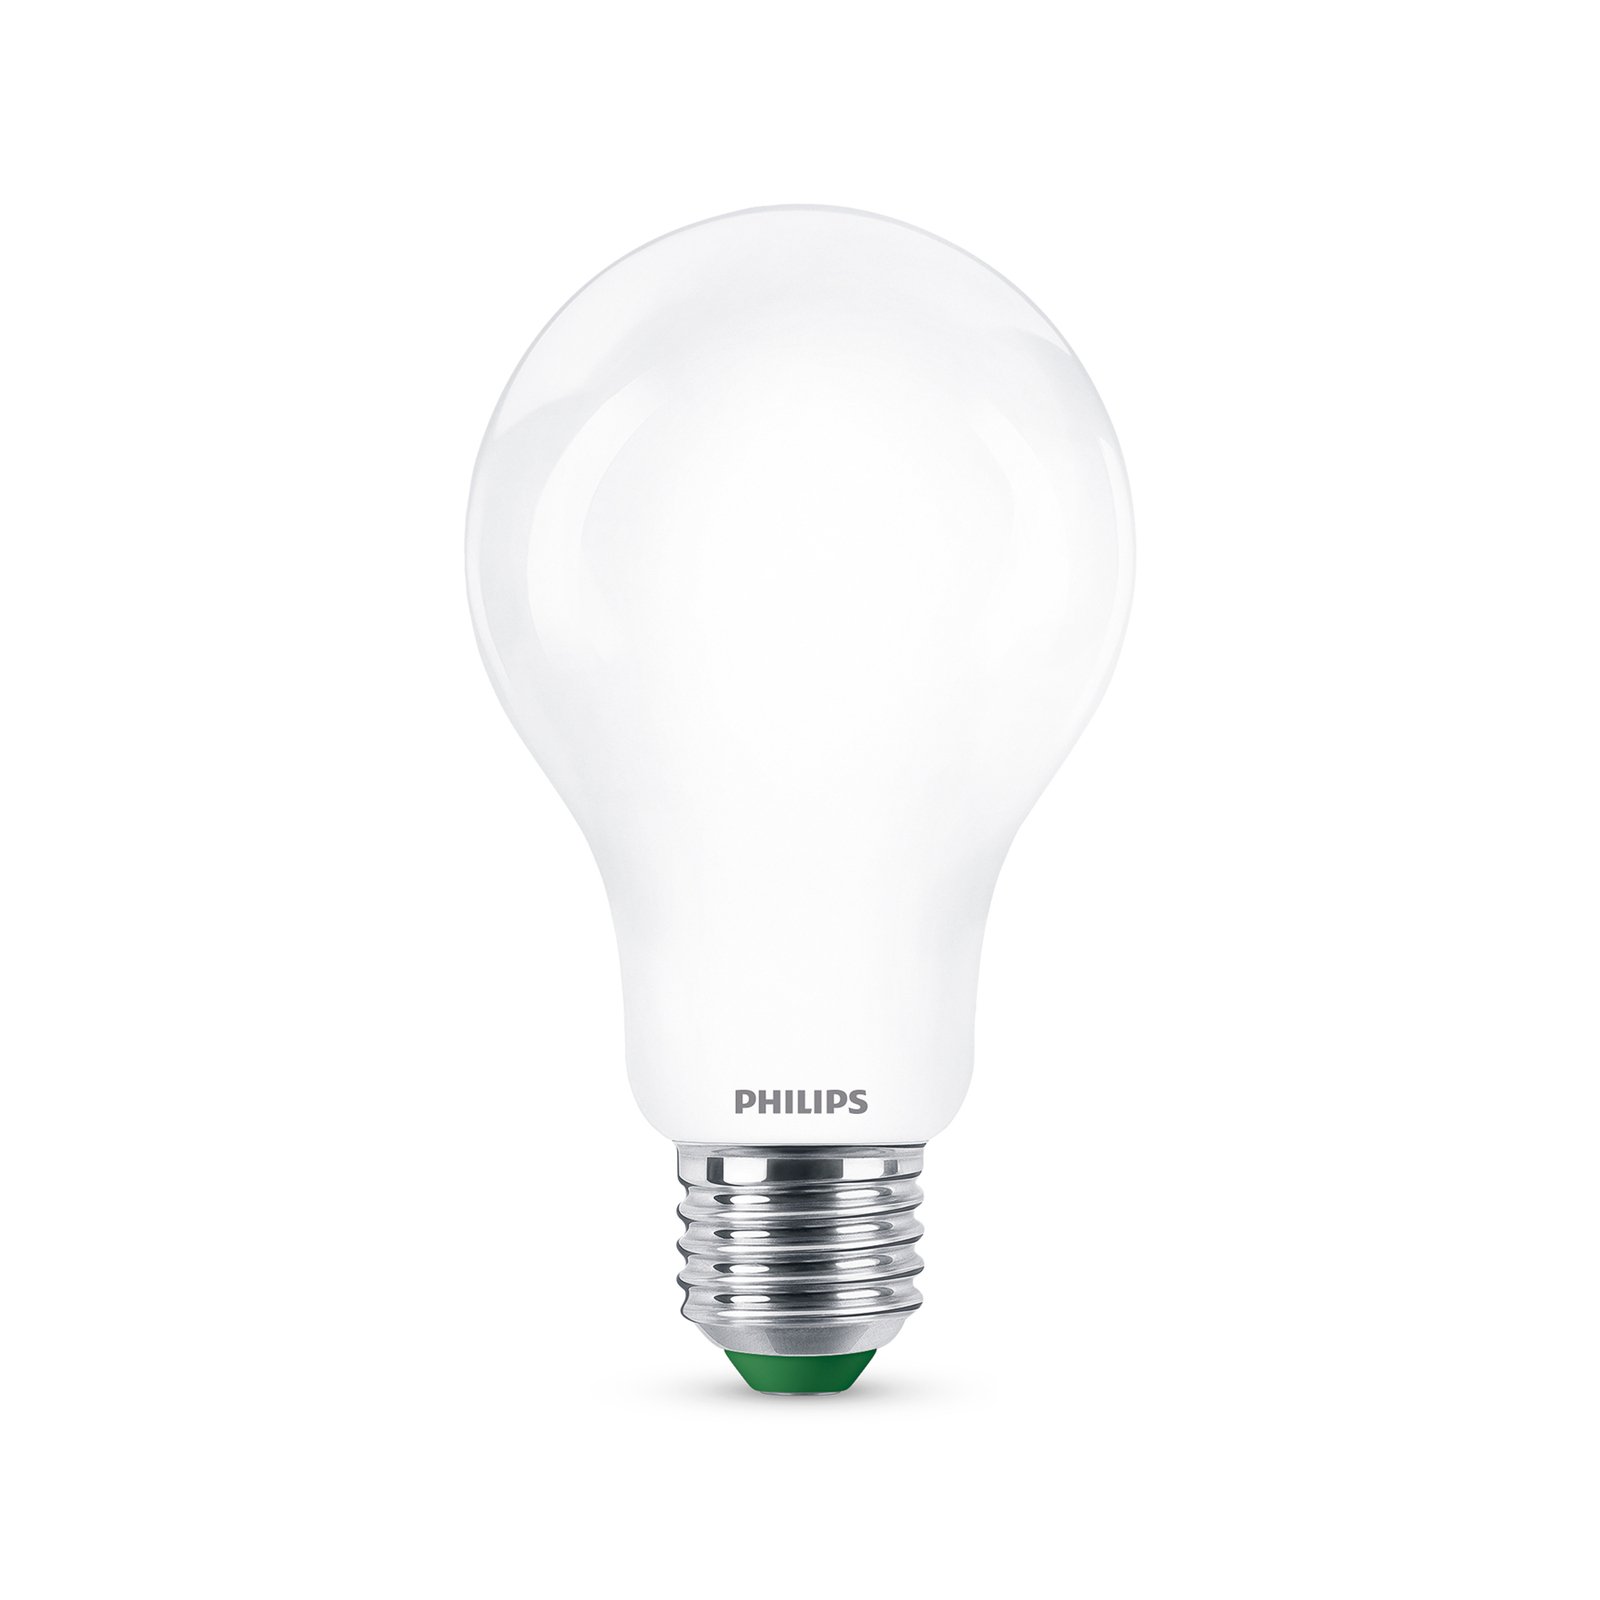 Philips LED bulb E27 A70 7.3W 1,535lm matt 3,000K